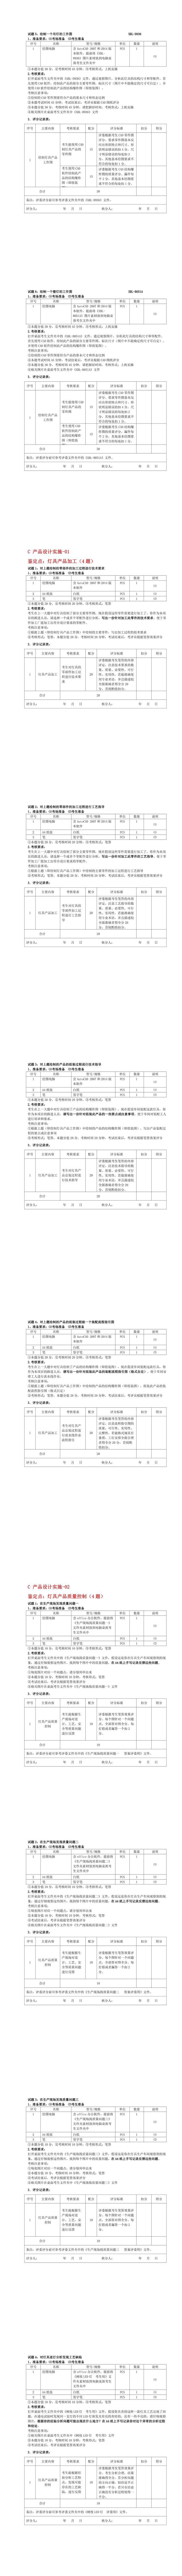 灯具设计员级操作技能考核实操题库(21-30).jpg